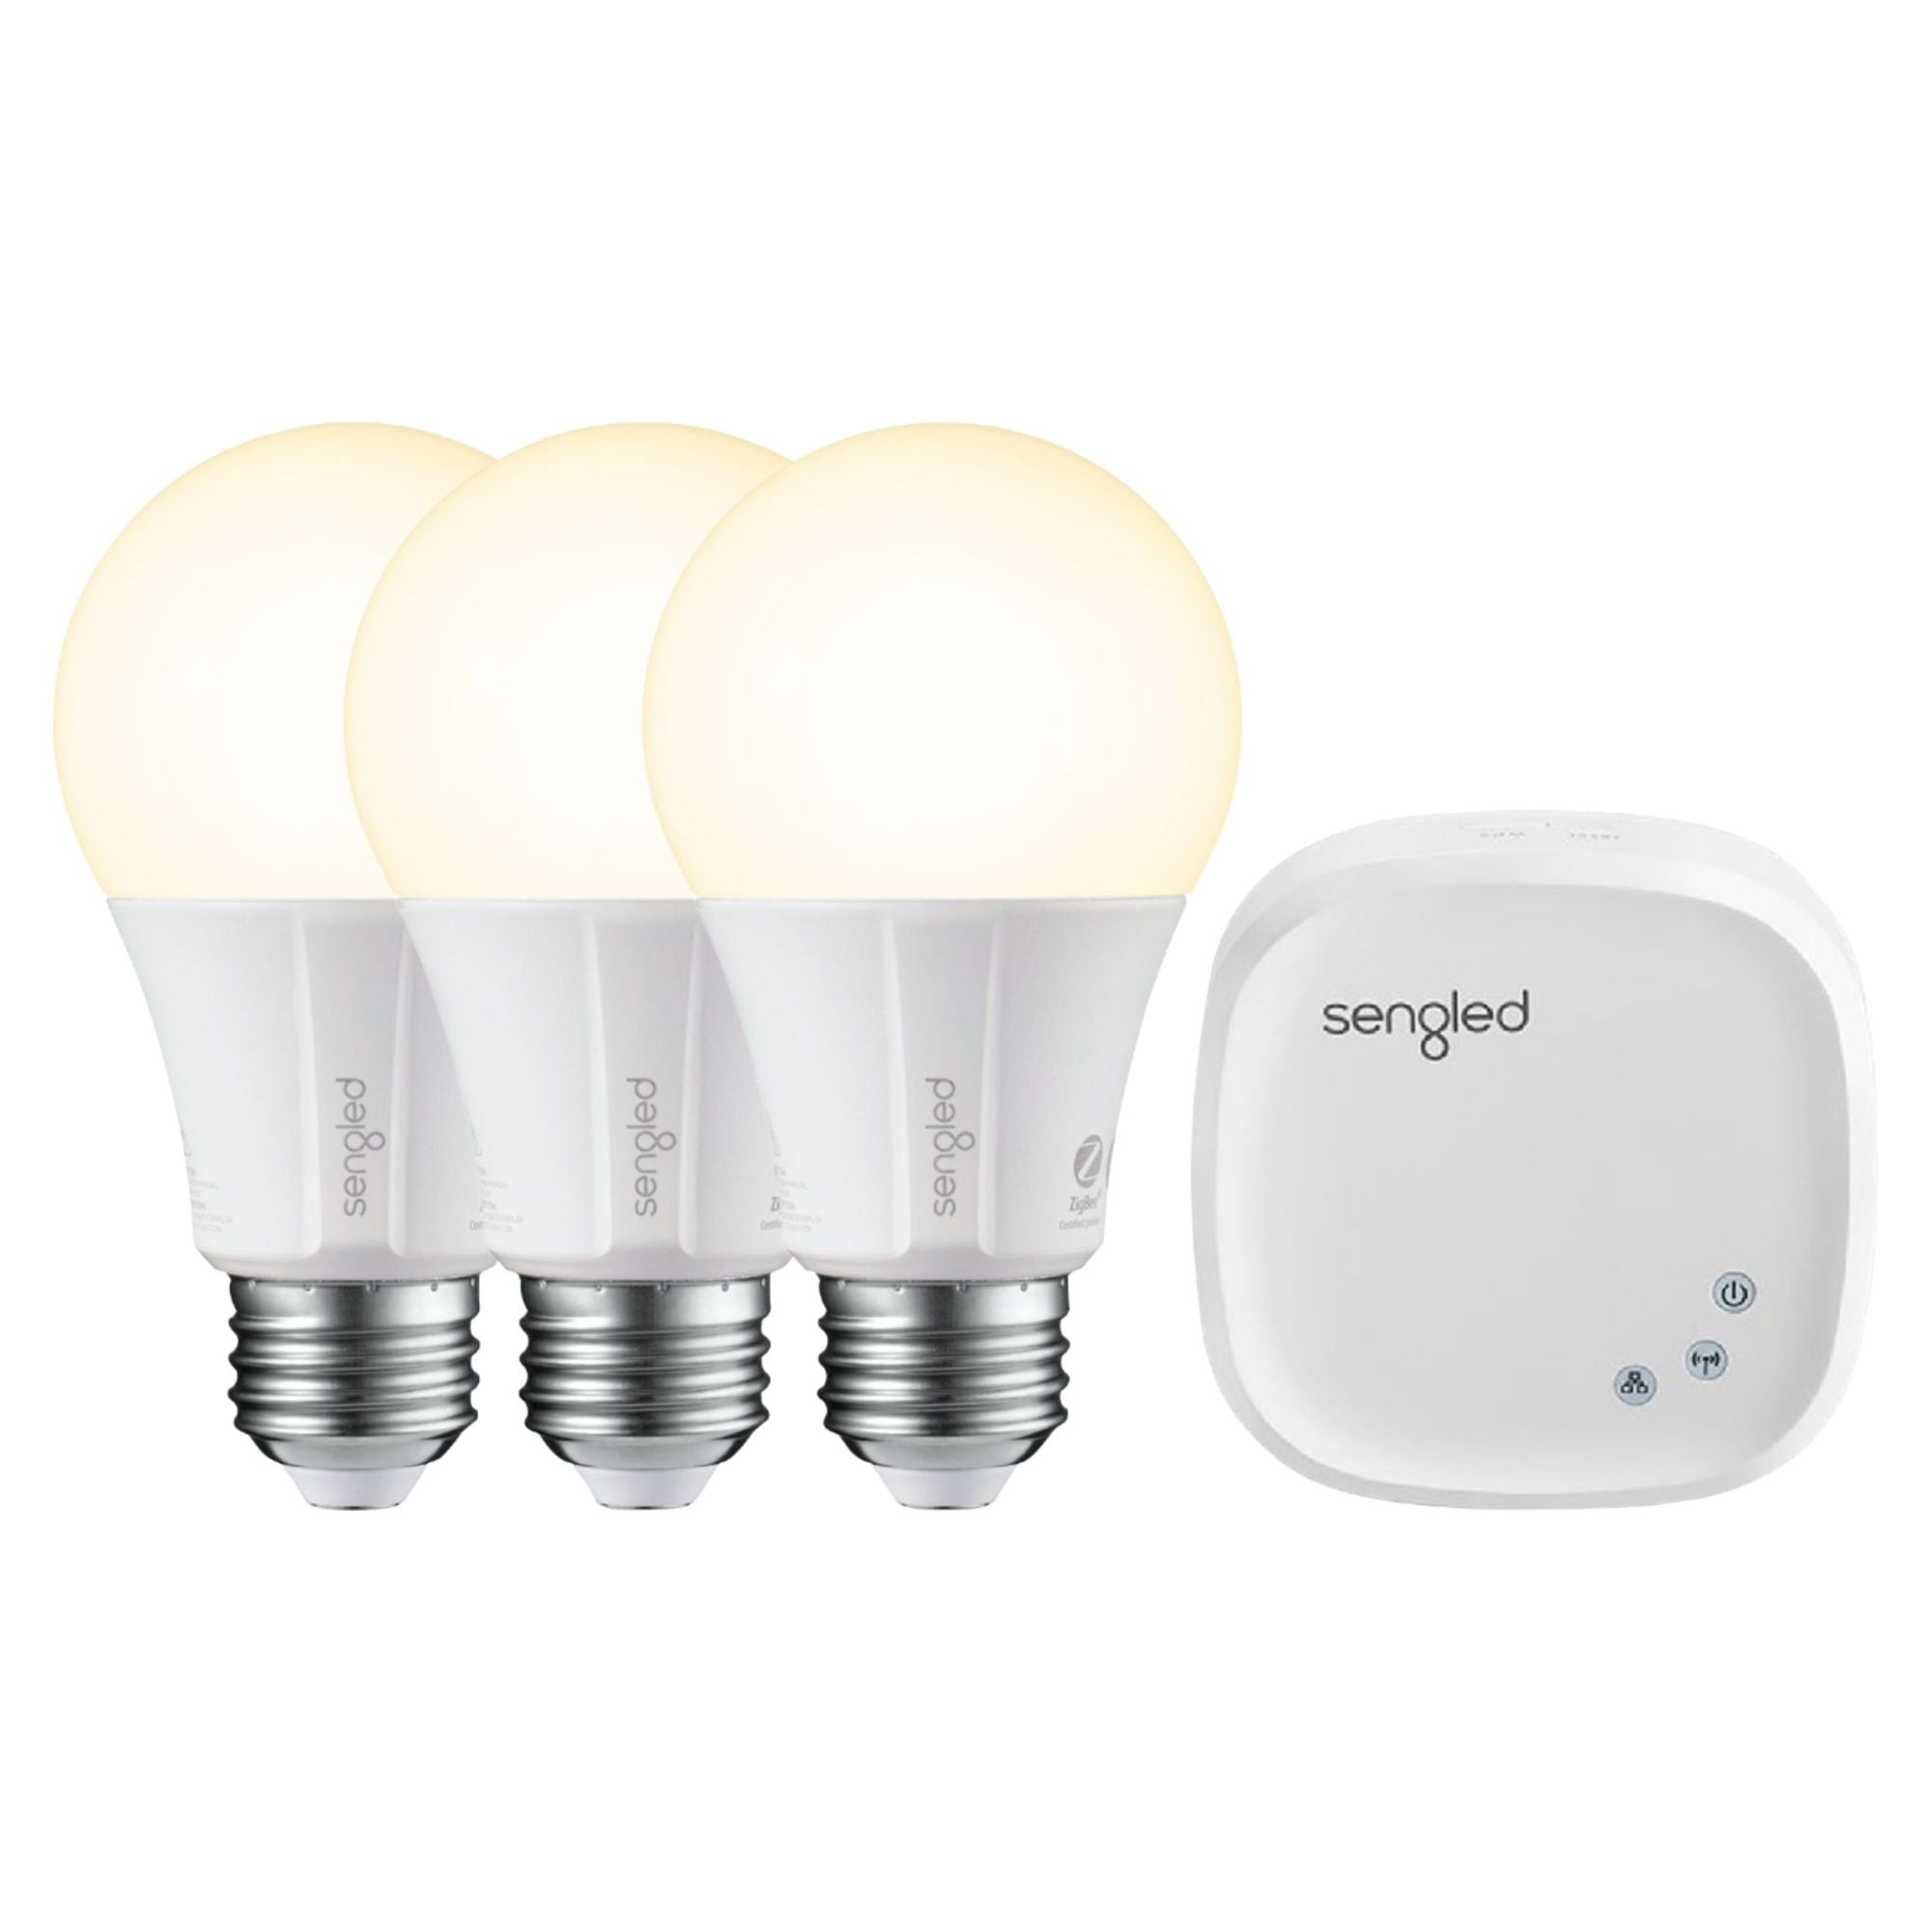 Sengled Smart LED A19 Starter Kit 3 Bulbs 1 Hub White Only - Walmart